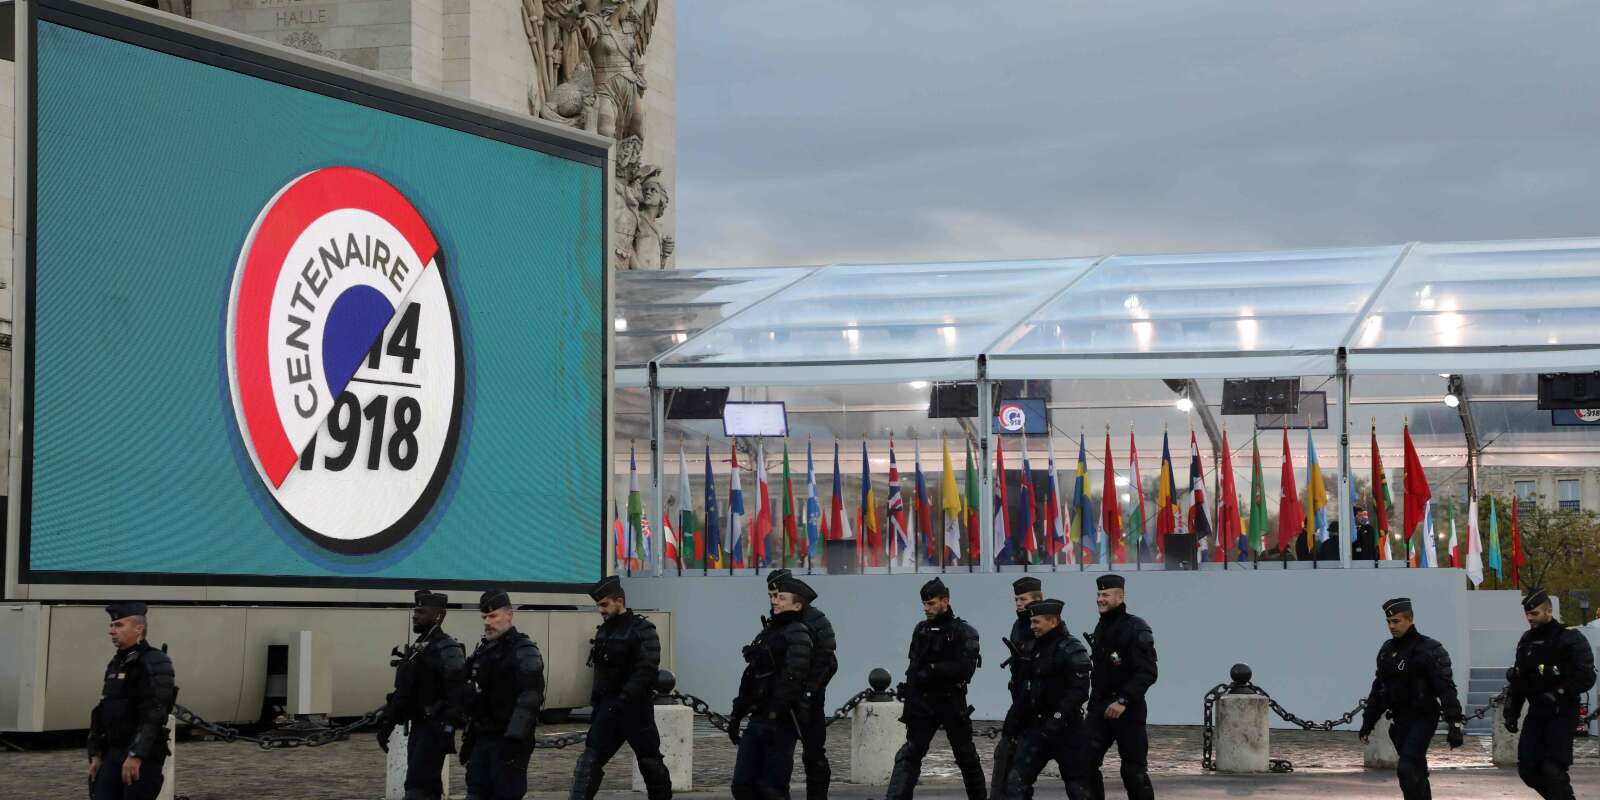 La préfecture de police de Paris évoque une « mobilisation maximale » de ses services et annonce le déploiement de près de 10 000 membres des forces de l’ordre pour les commémorations du centenaire de l’armistice.